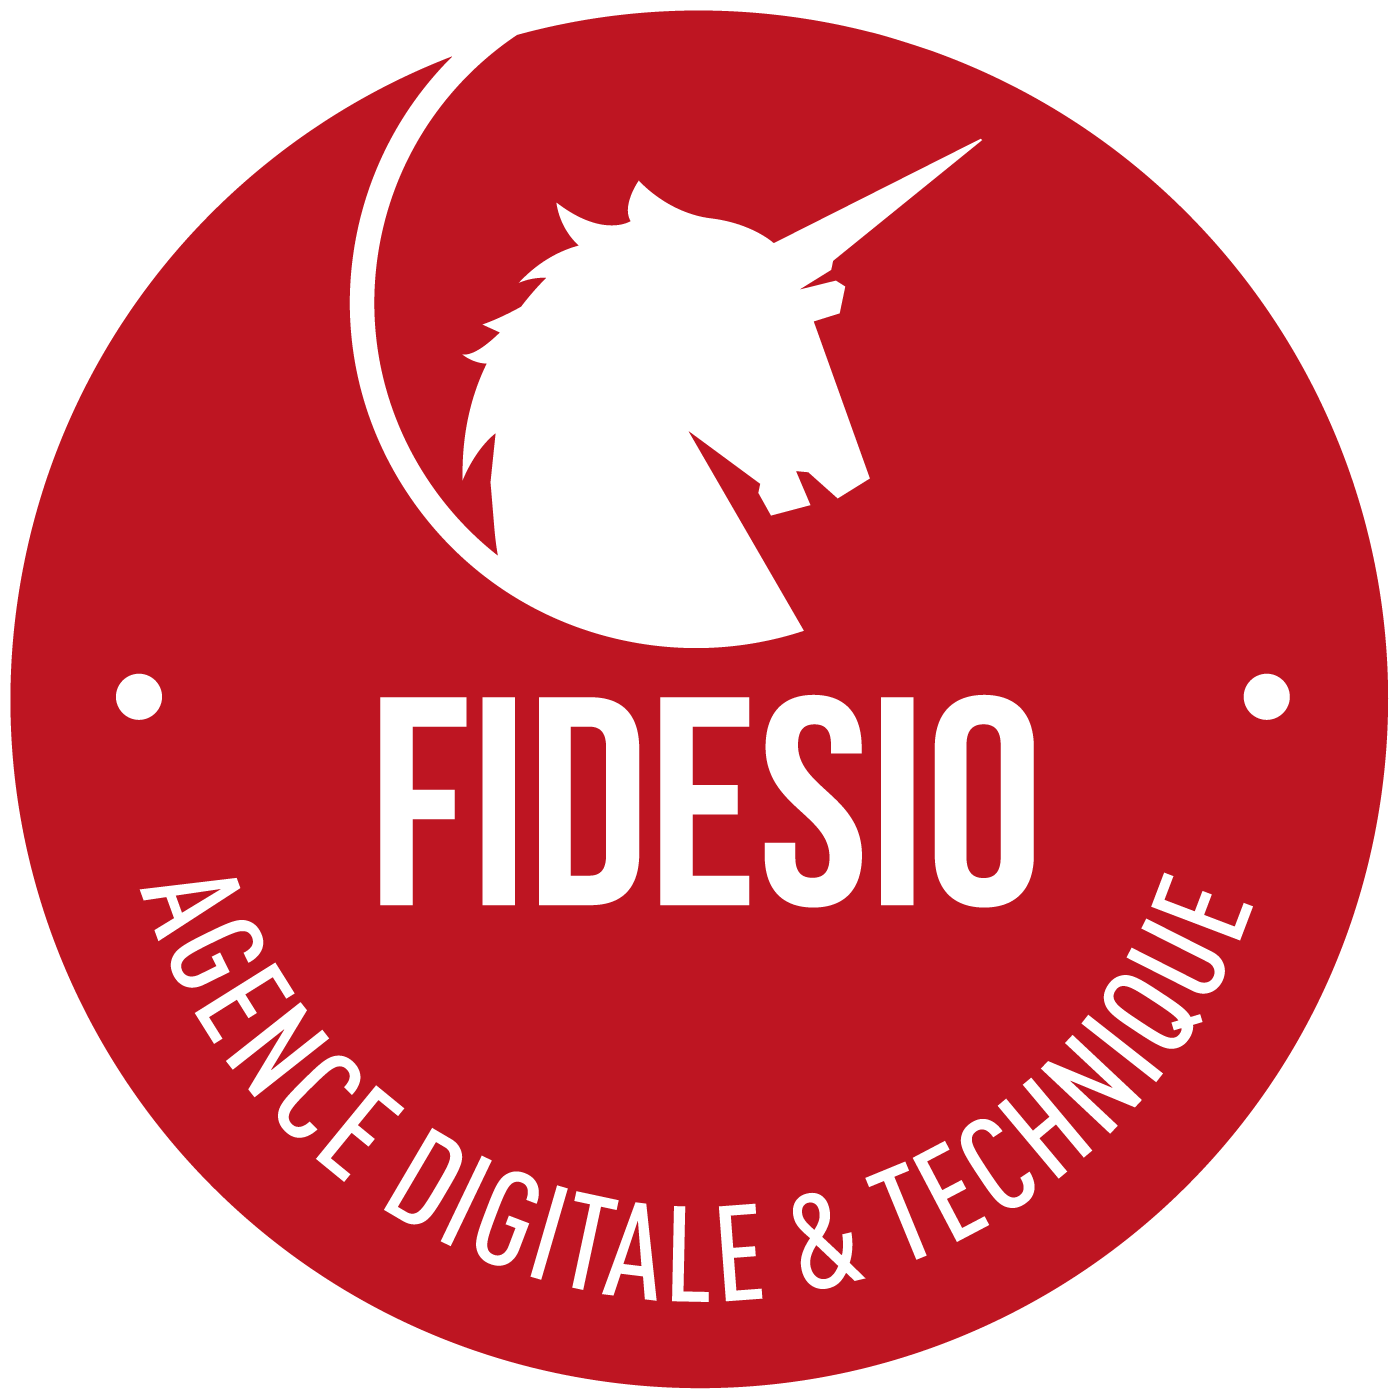 Fidesio